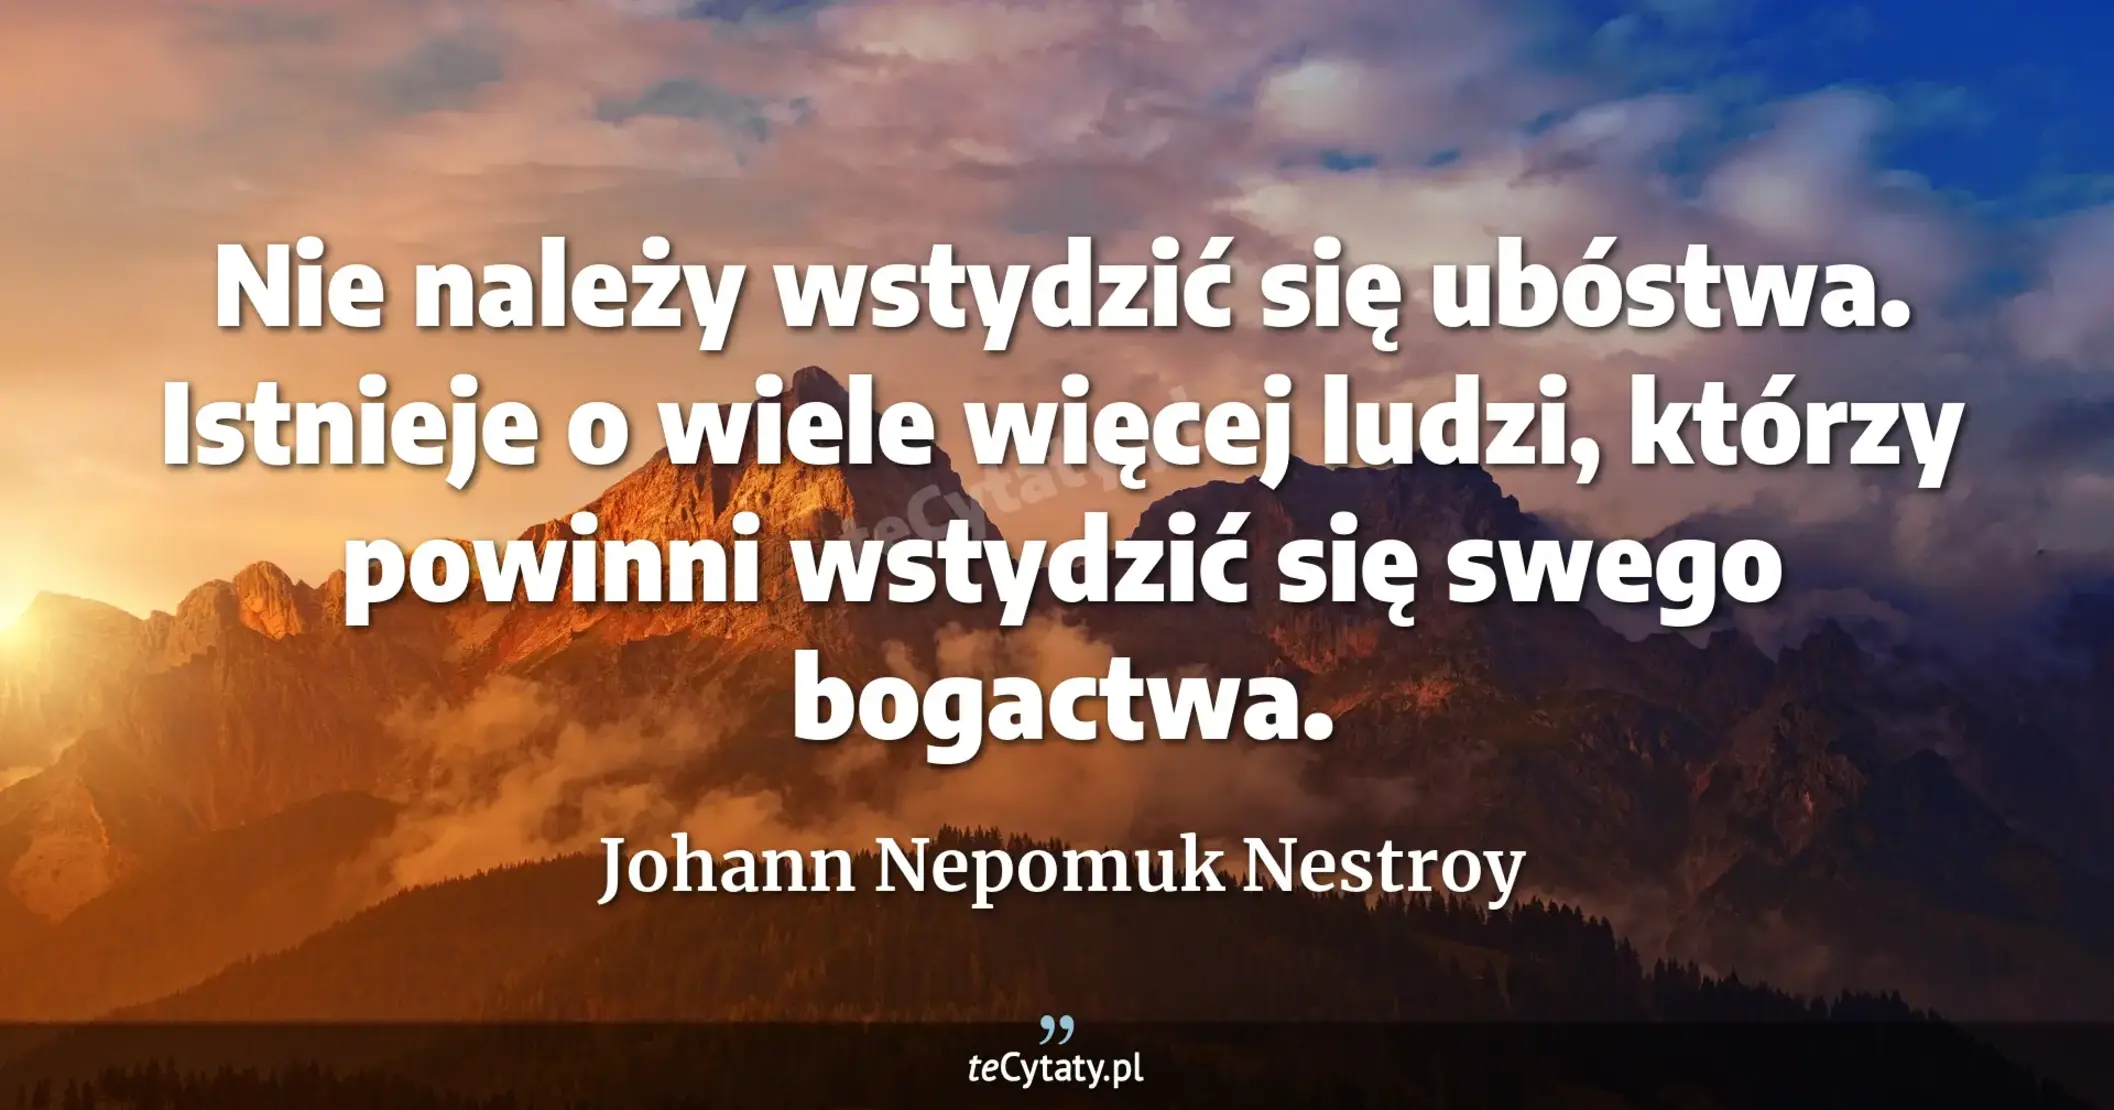 Nie należy wstydzić się ubóstwa. Istnieje o wiele więcej ludzi, którzy powinni wstydzić się swego bogactwa. - Johann Nepomuk Nestroy